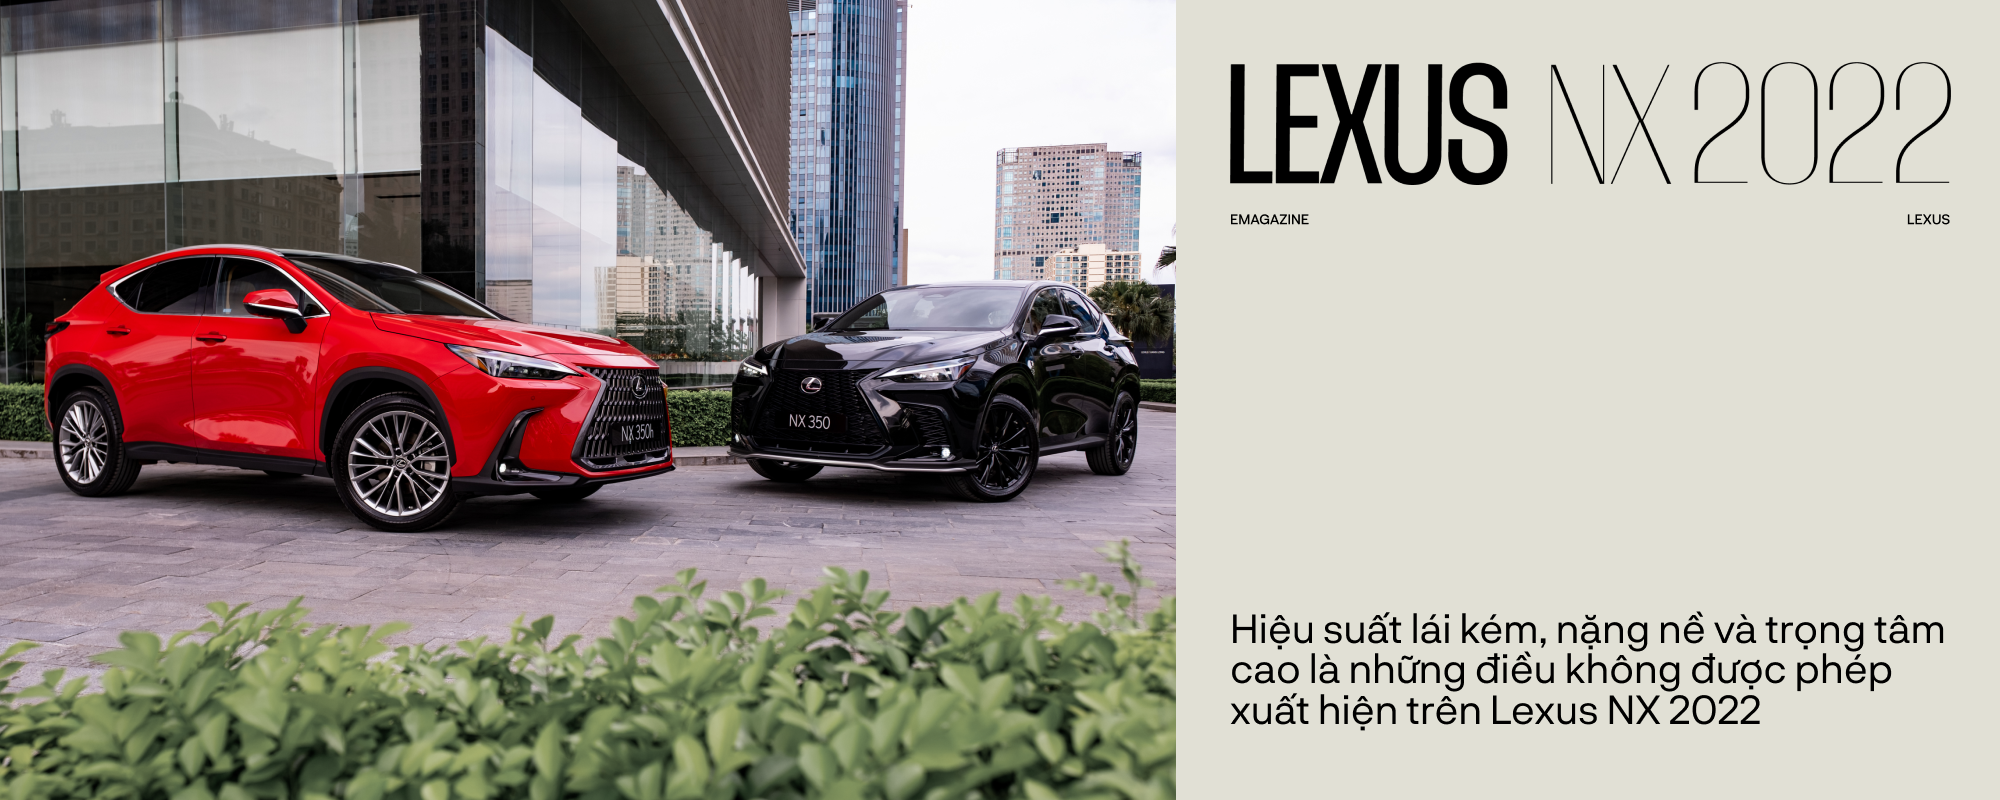 NX thành công nhờ vào những giá trị chưa từng có trên Lexus - Ảnh 8.